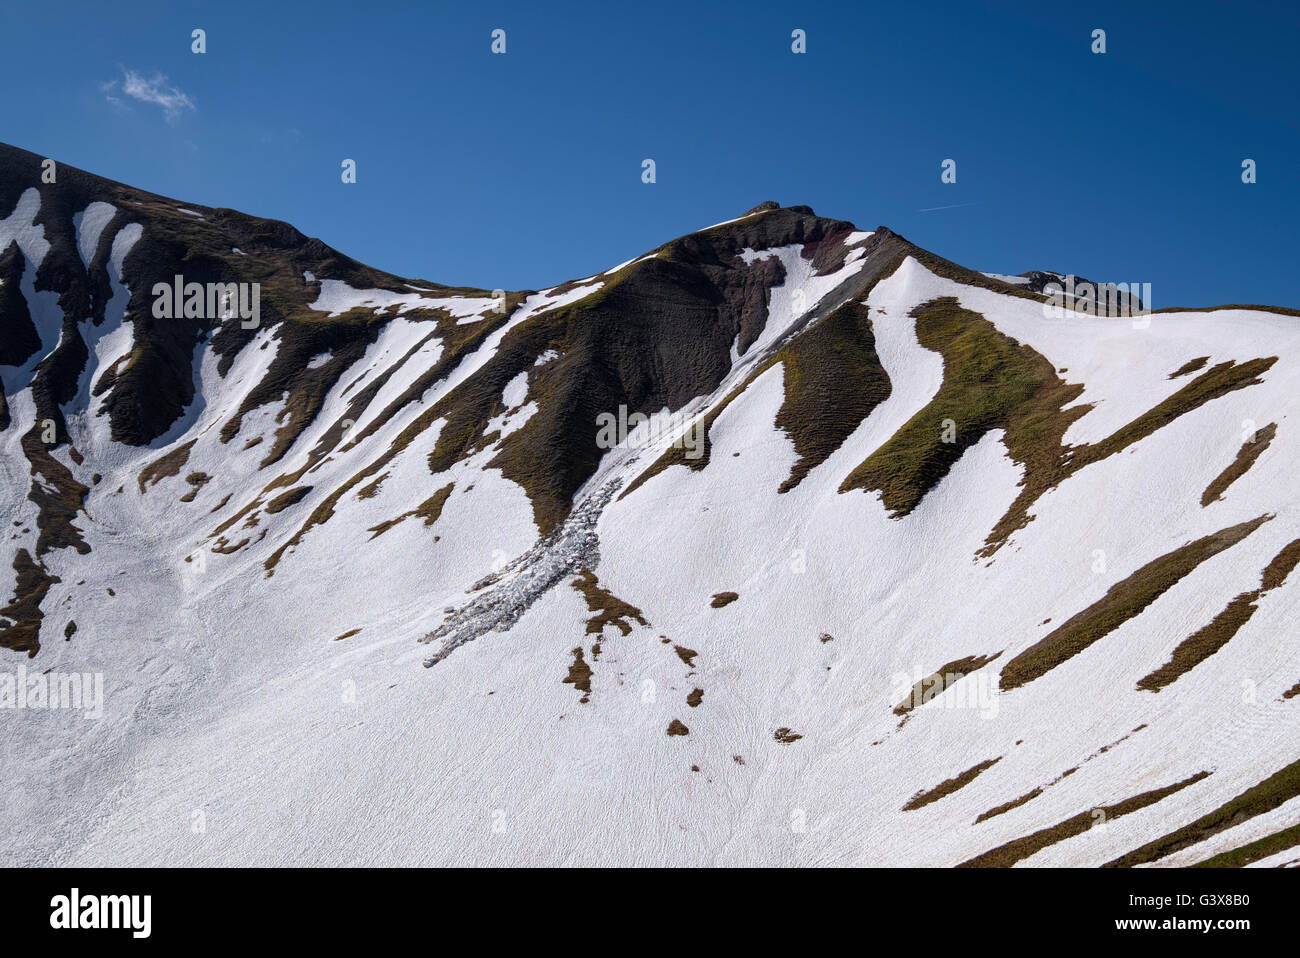 Schnee und Matsch Folie an einem steilen Berghang im Frühsommer, Tirol, Österreich Stockfoto